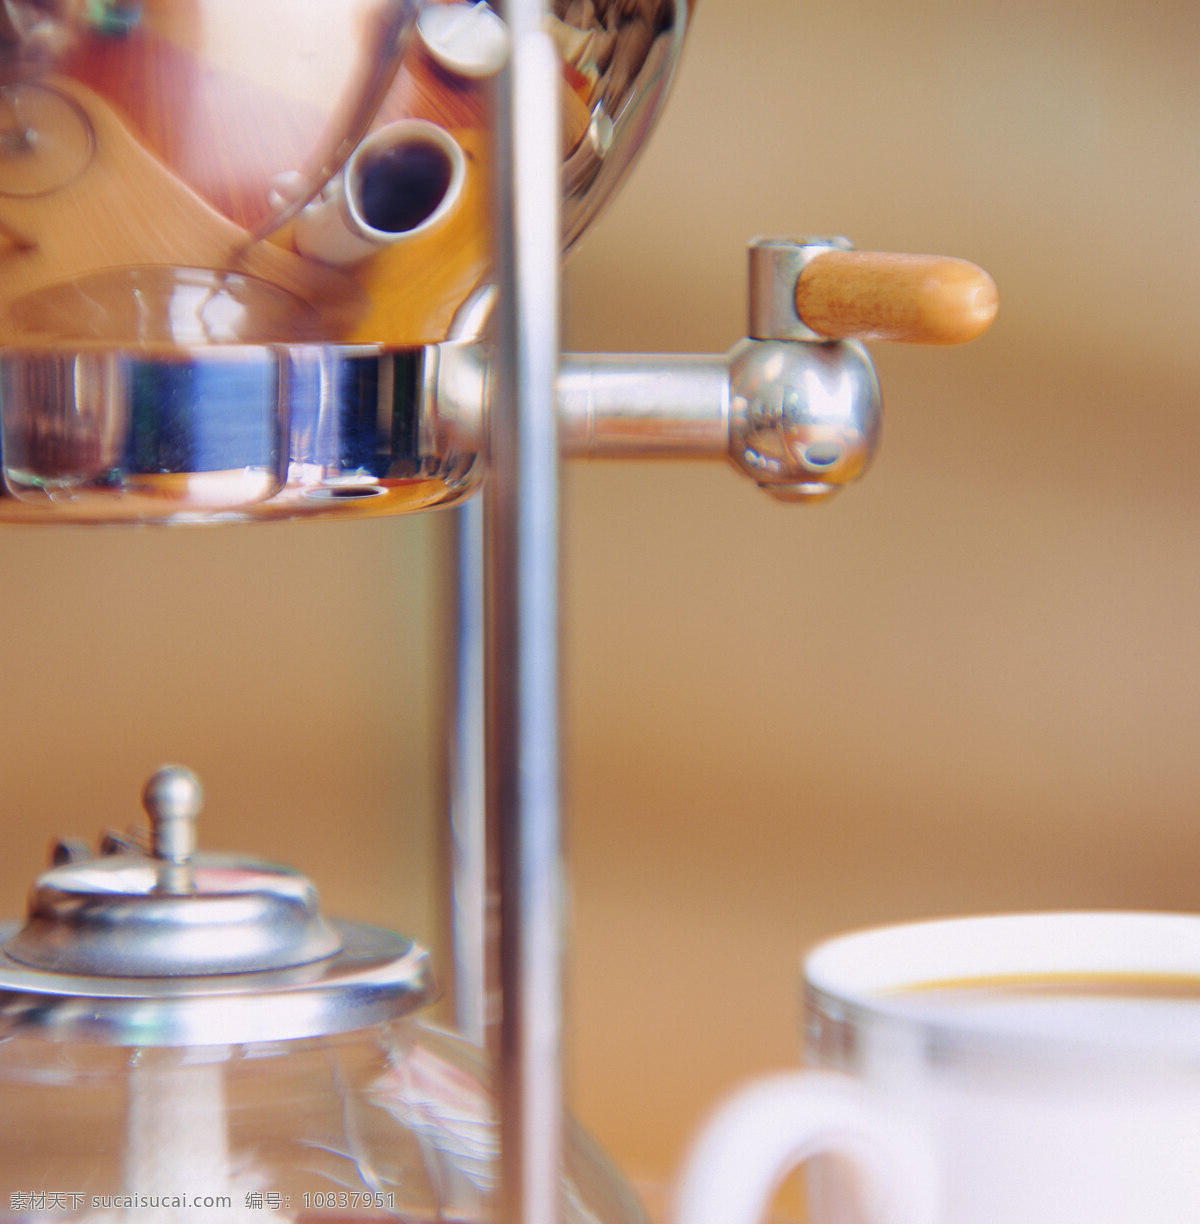 咖啡 提炼 过程 制作 加工 咖啡加工容器 可可 咖啡制作 咖啡试验 咖啡杯 咖啡试验室 棕色